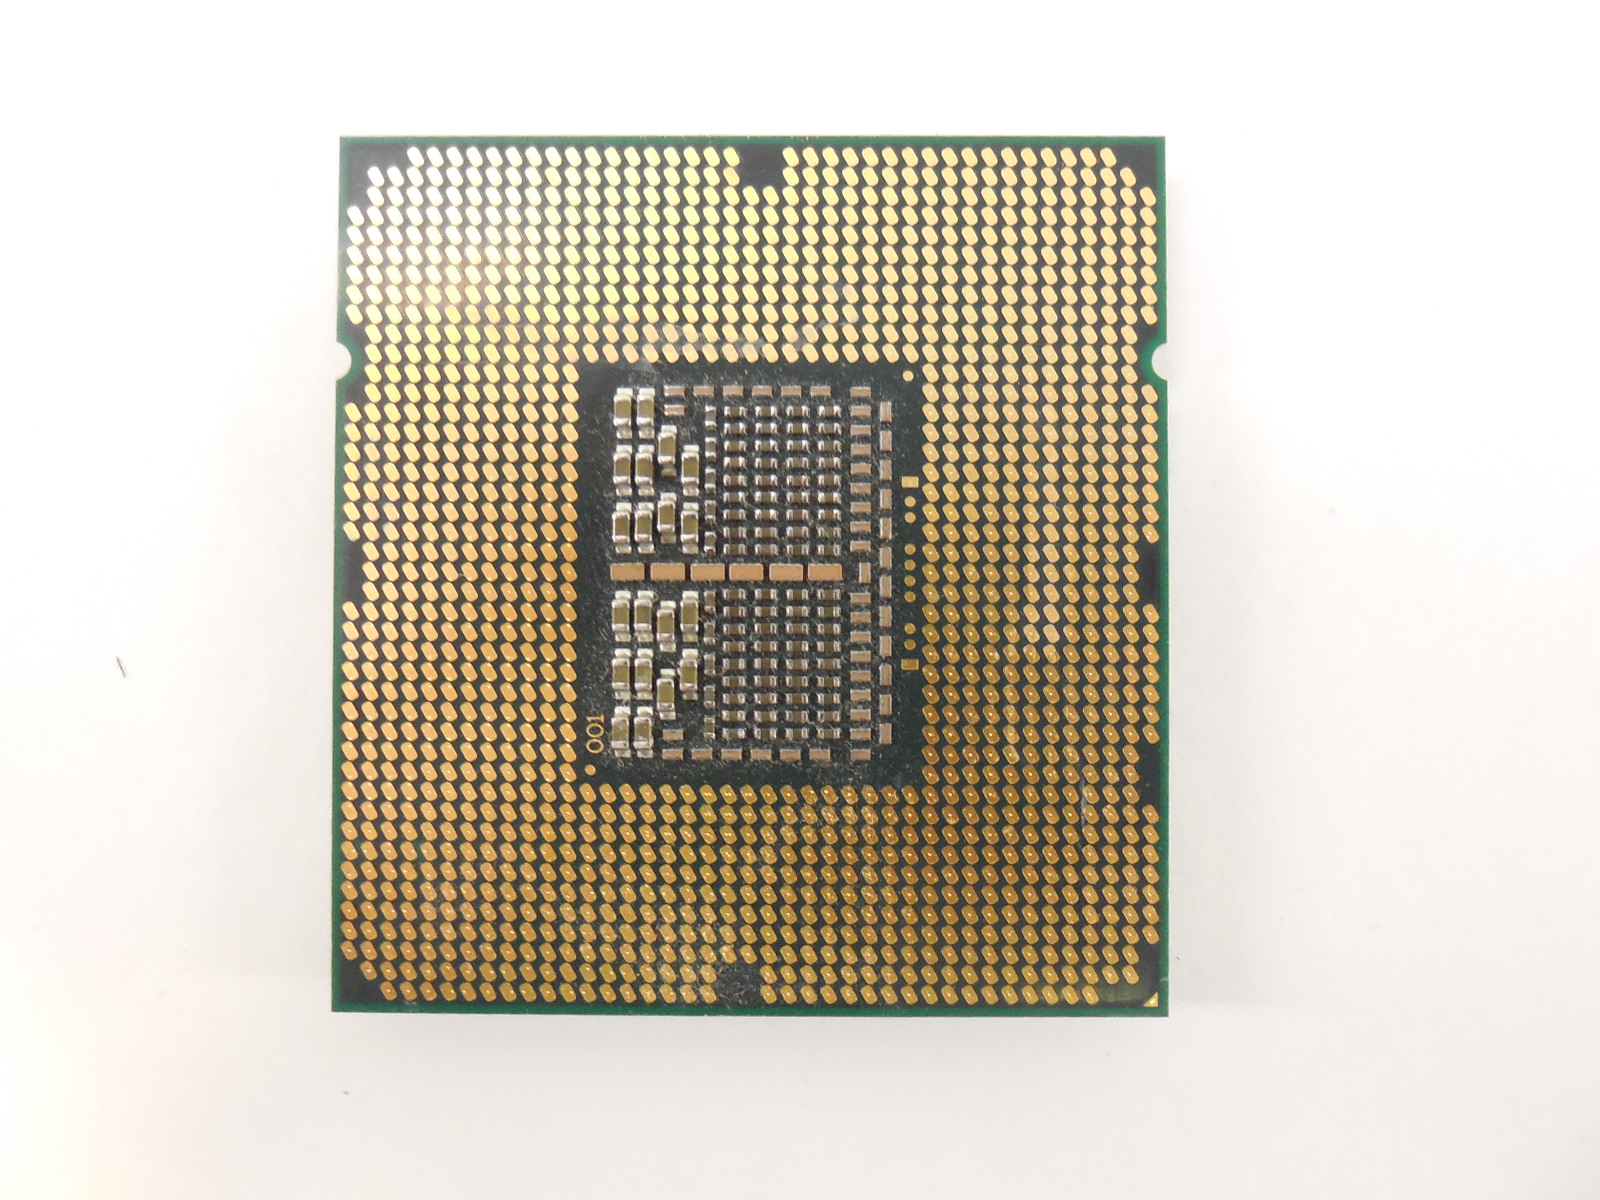 Процессор серверный Intel Xeon X5550  - Pic n 260761